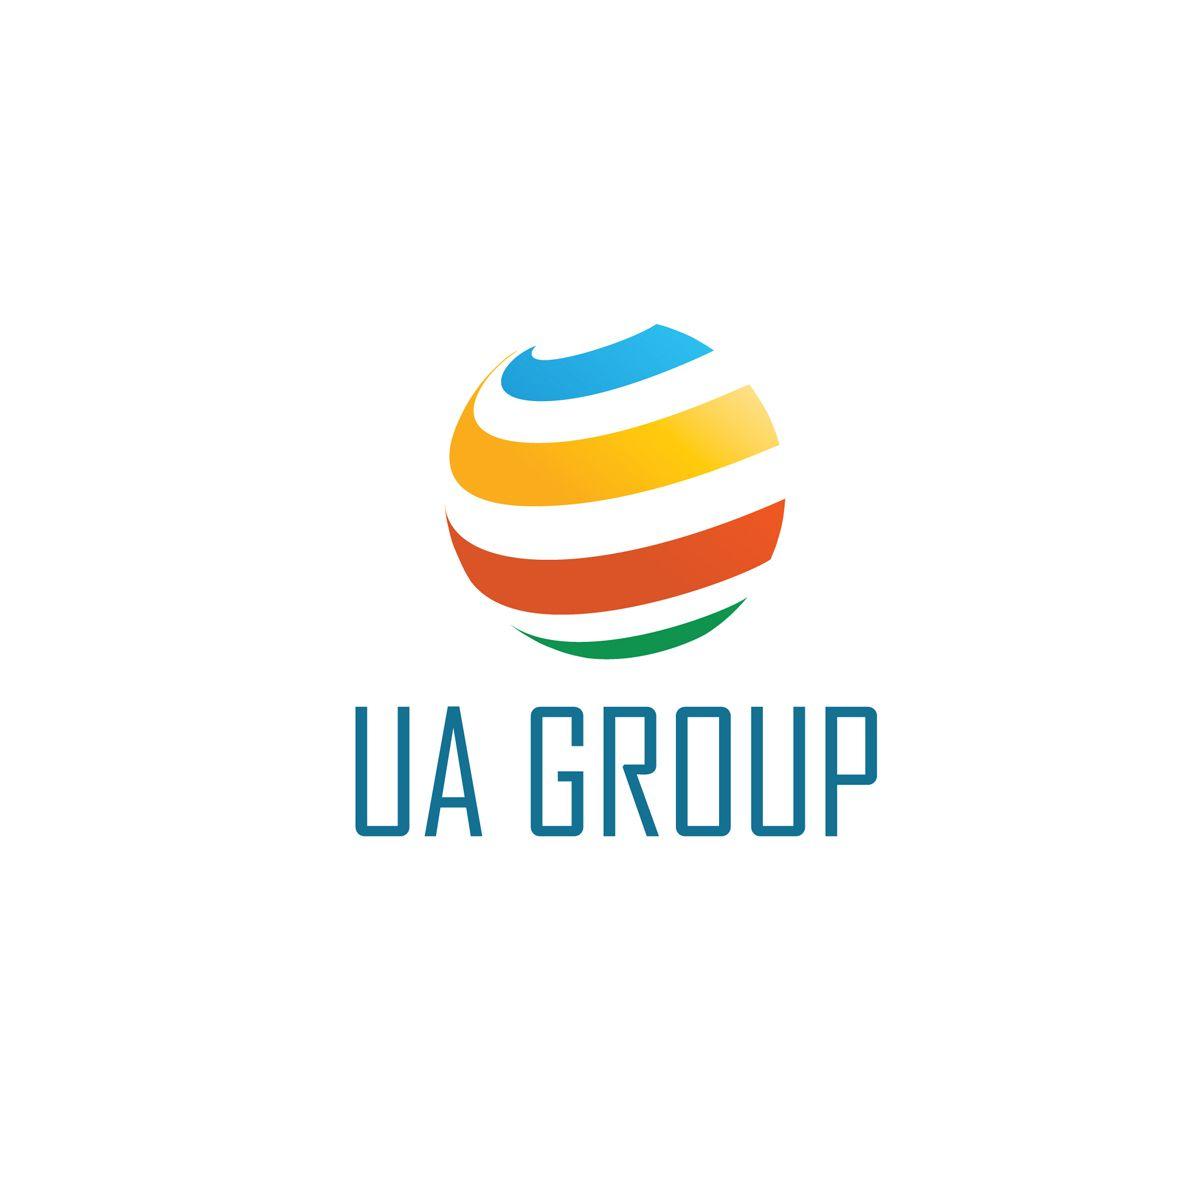 Glob Logo - Kele Wilson's Globe Logo Wins The UA Group Logo Design Contest